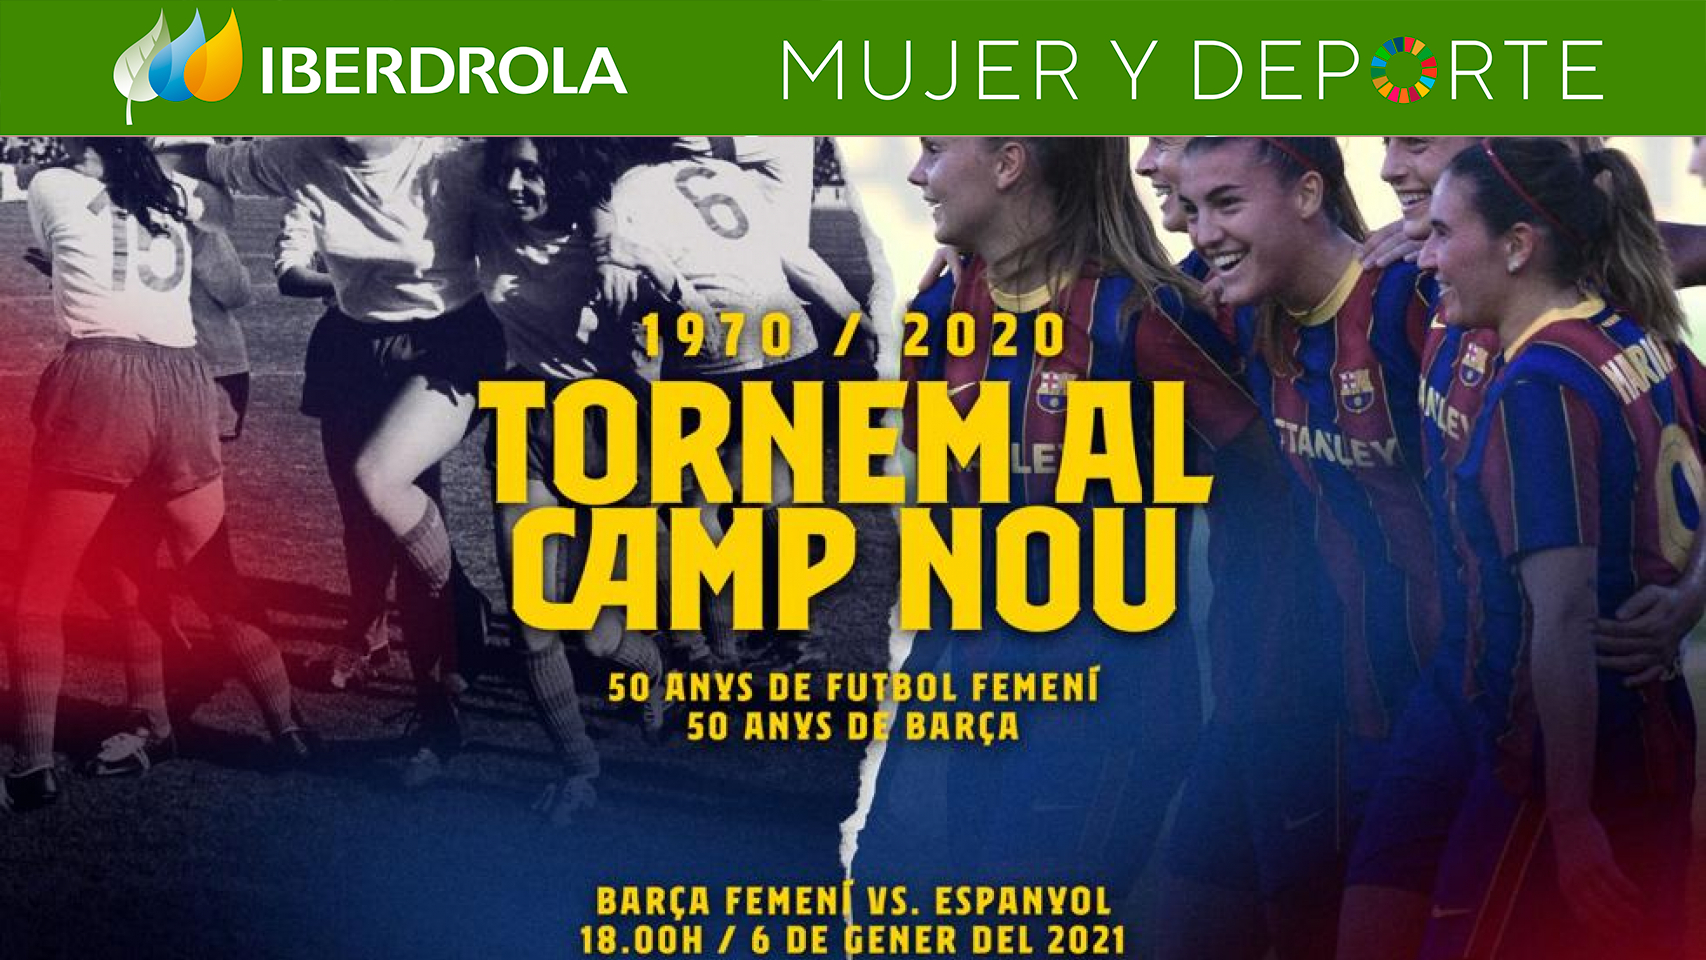 El Barça Femenino regresa al Camp Nou 50 años después